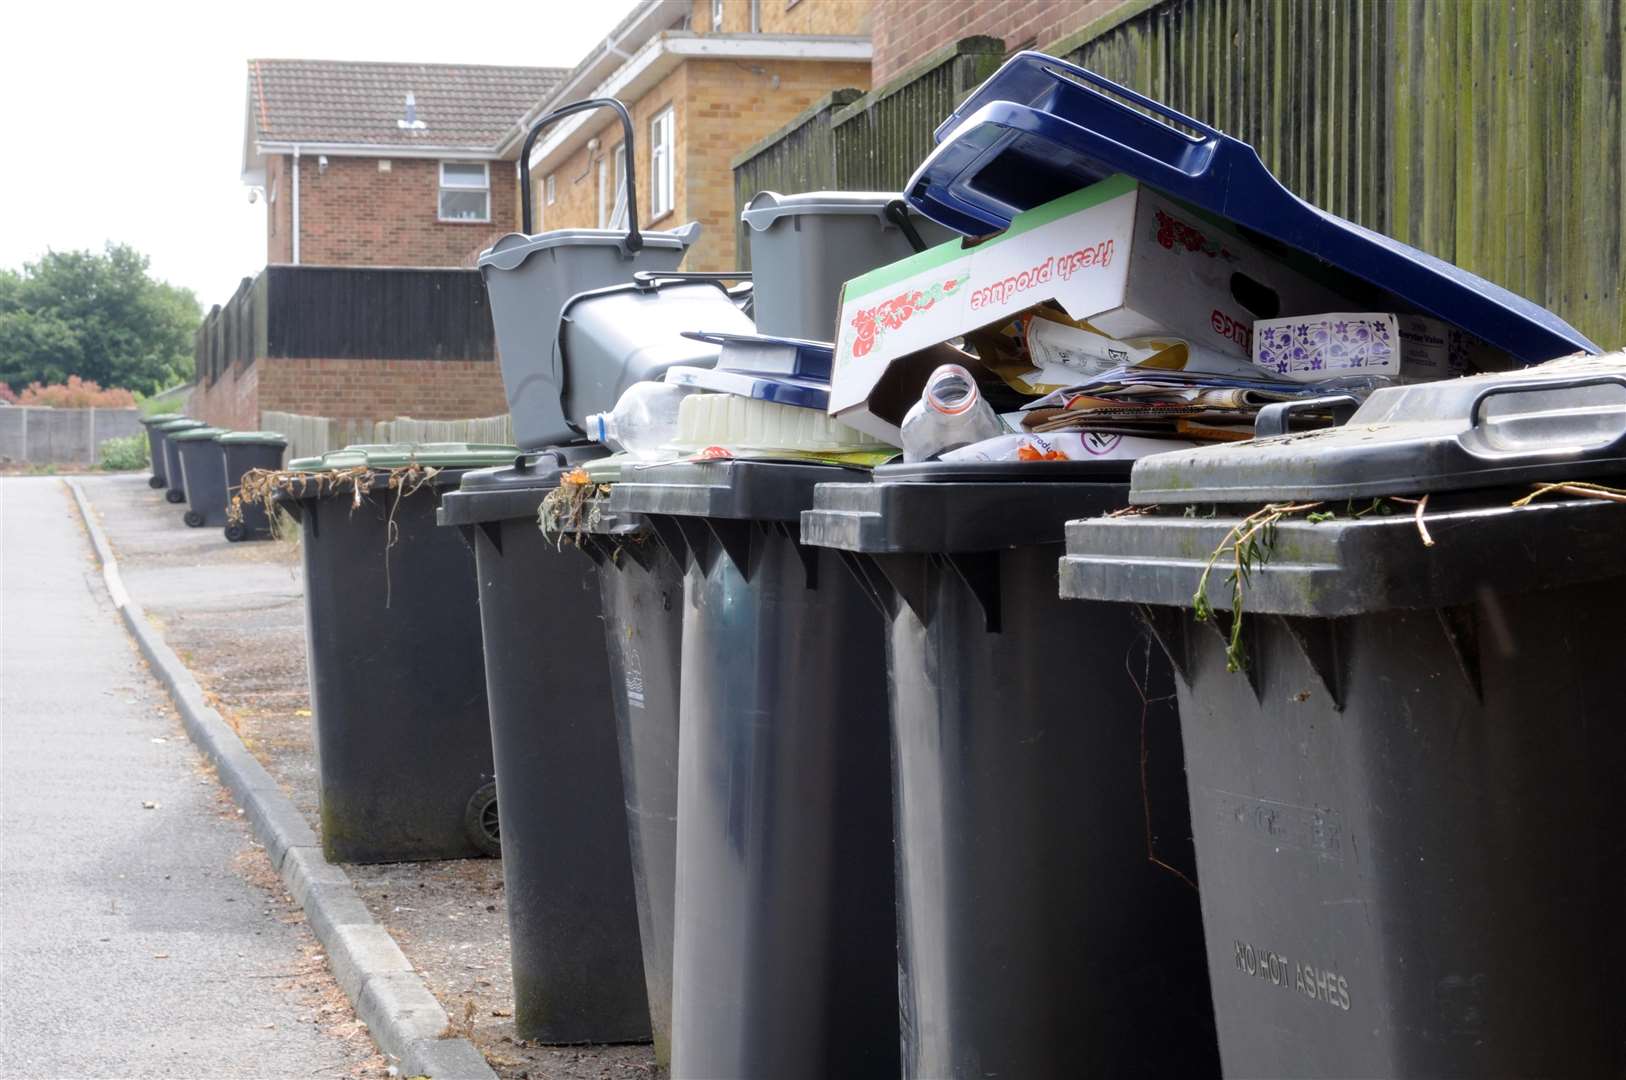 Rubbish bins in Canterbury